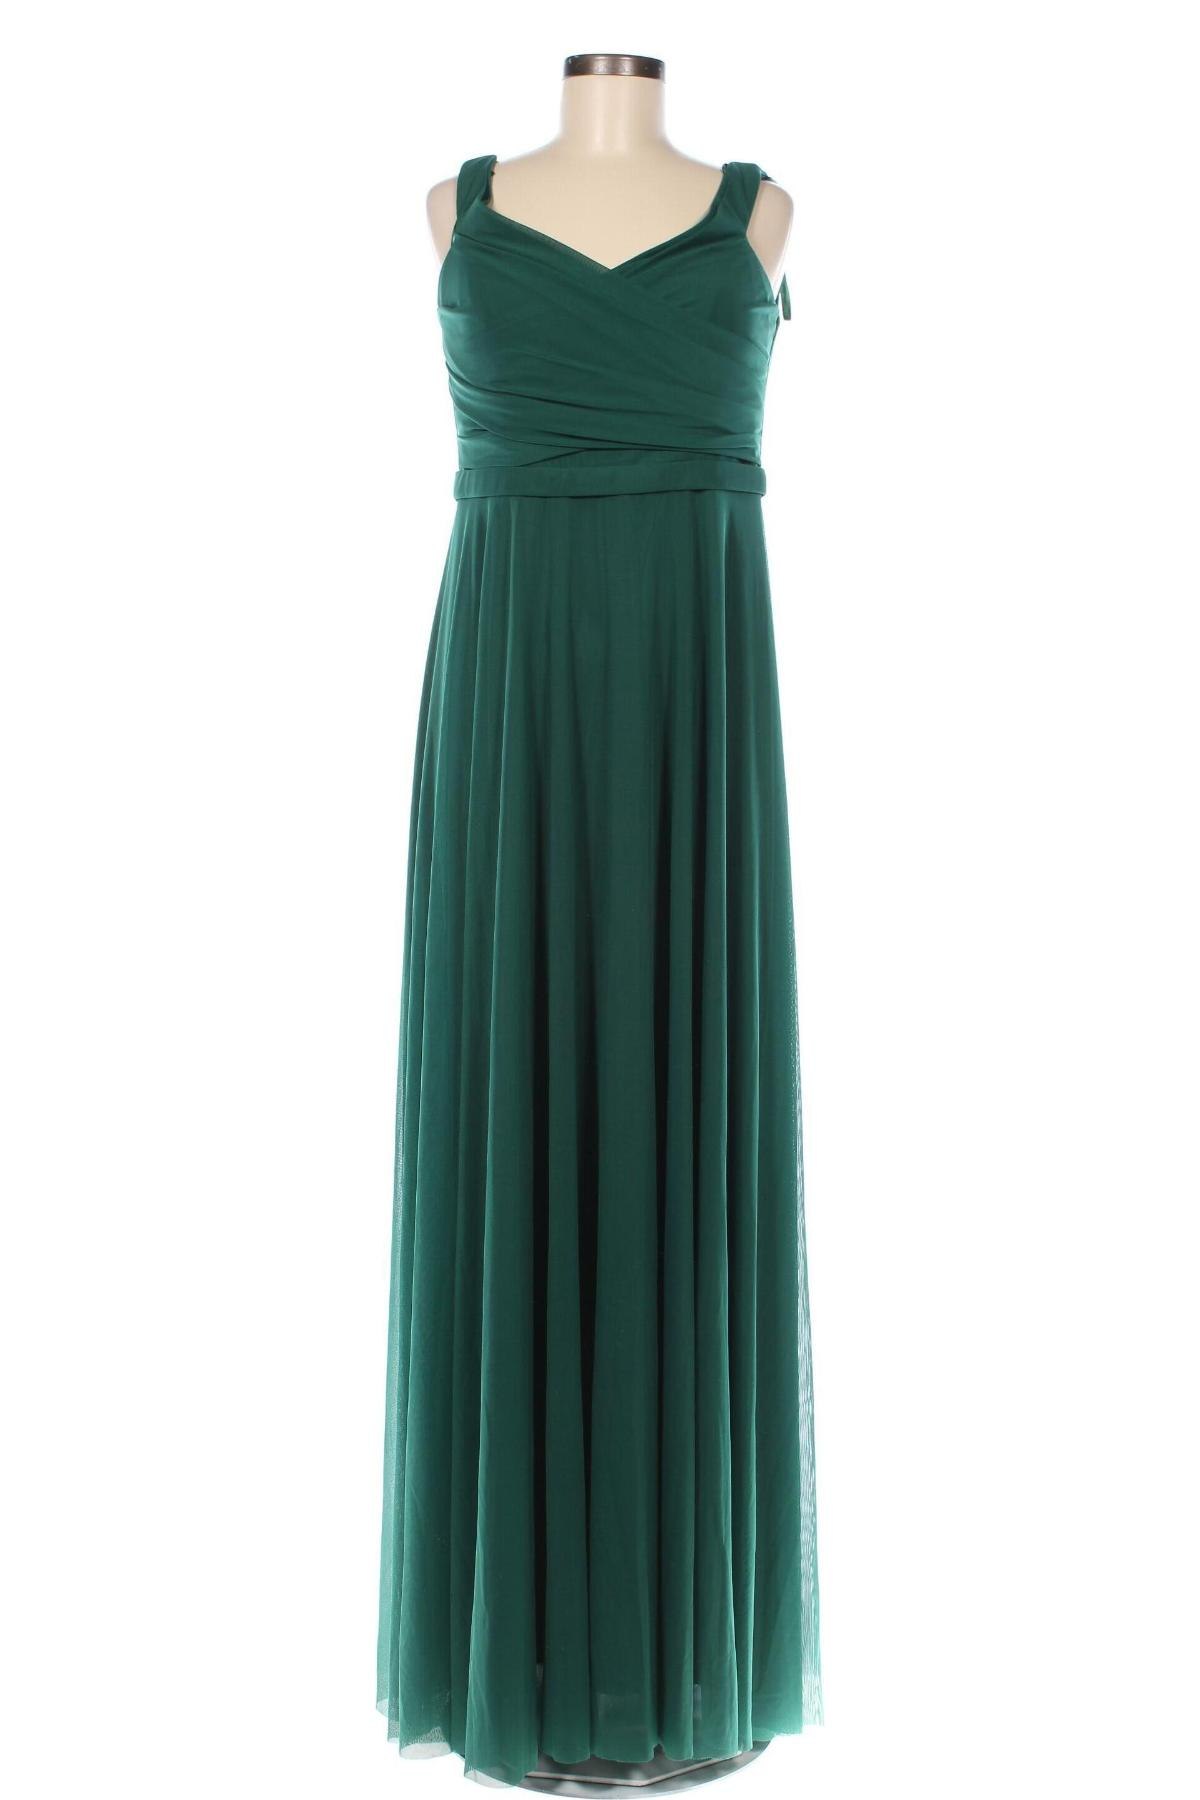 Φόρεμα Troyden, Μέγεθος M, Χρώμα Πράσινο, Τιμή 63,09 €